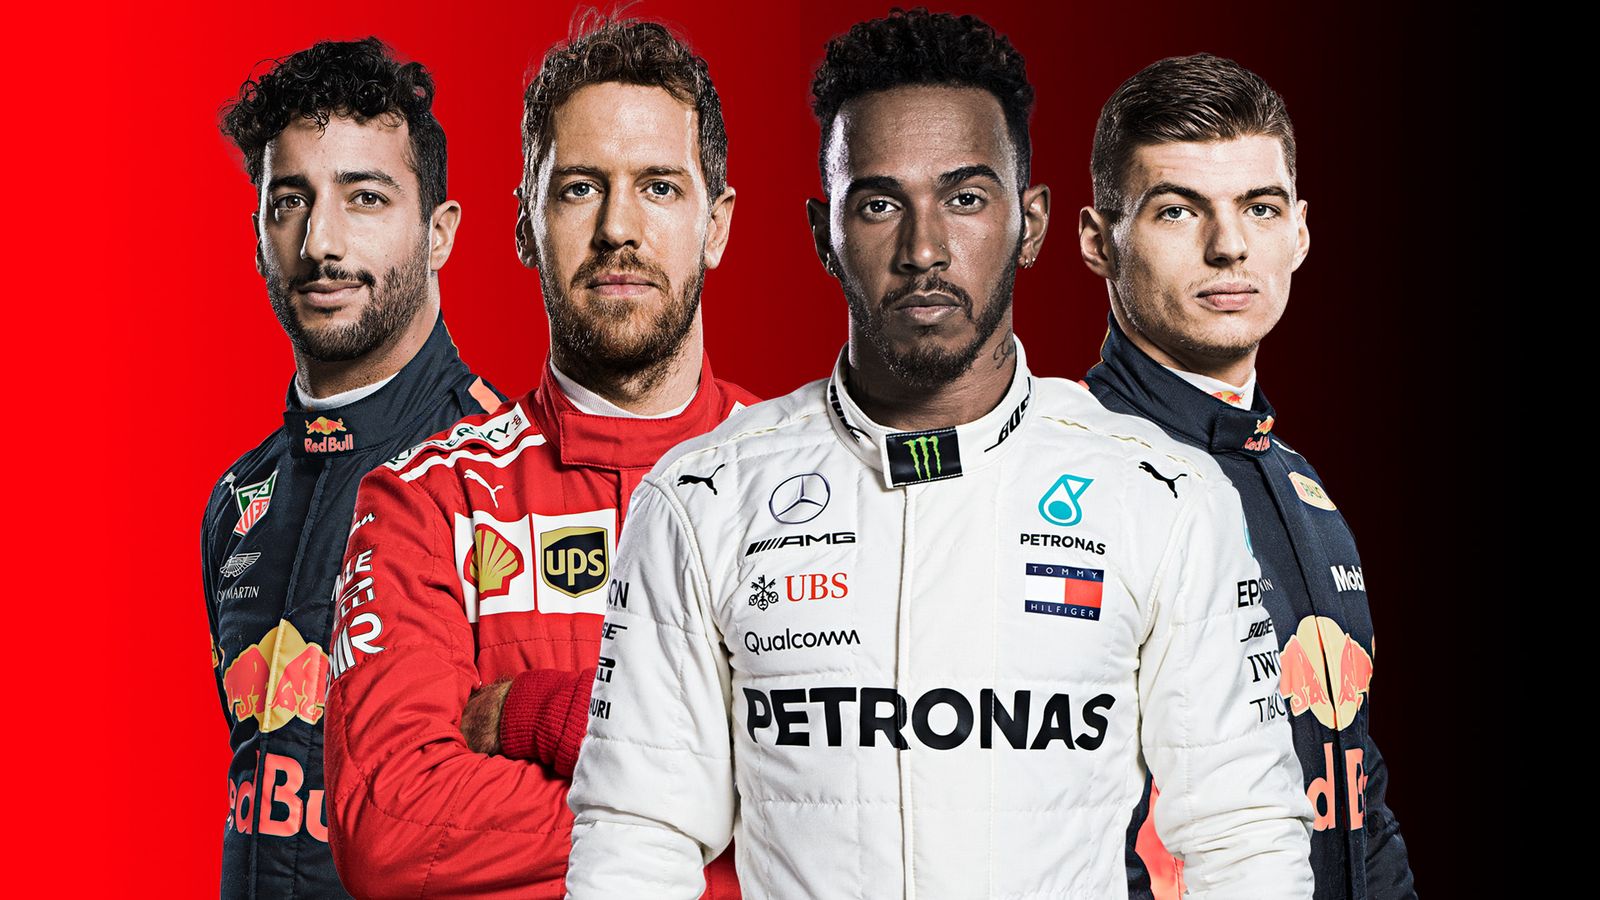 Lewis Hamilton v Sebastian Vettel The story of the F1 2018 title race